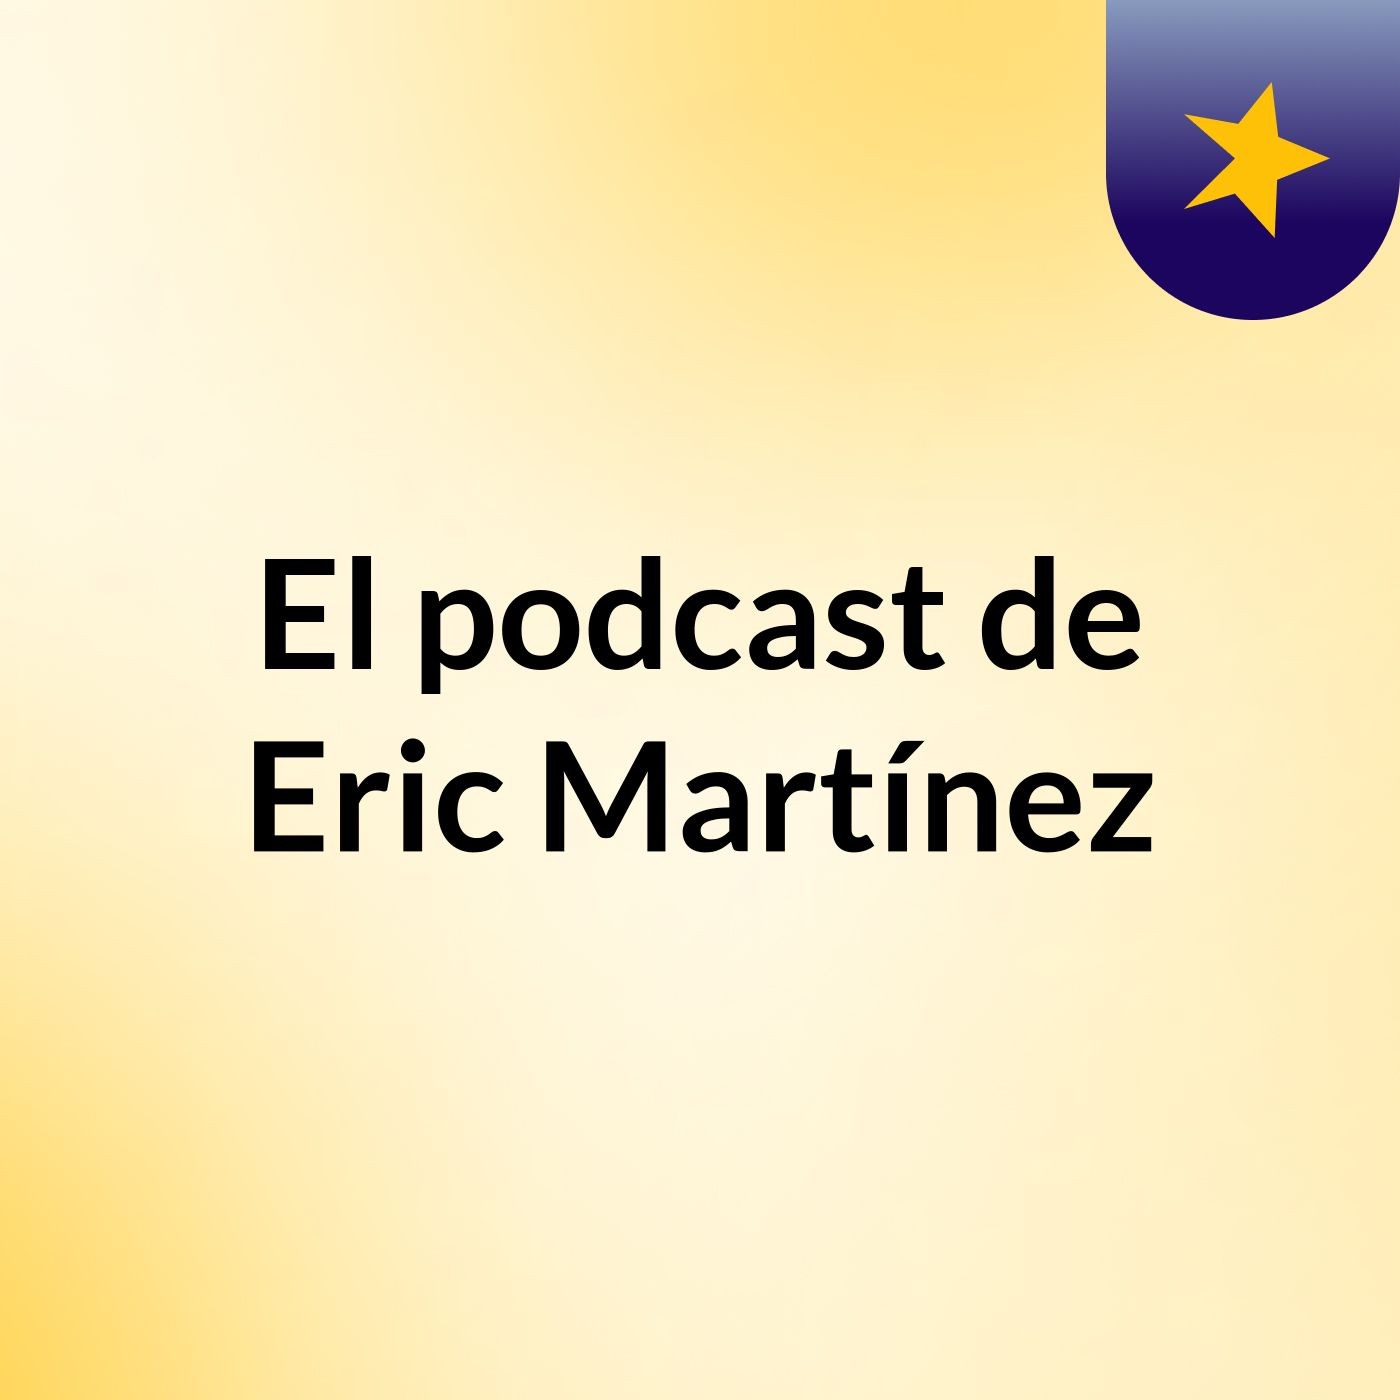 Episodio 1 - El podcast de Eric Martínez